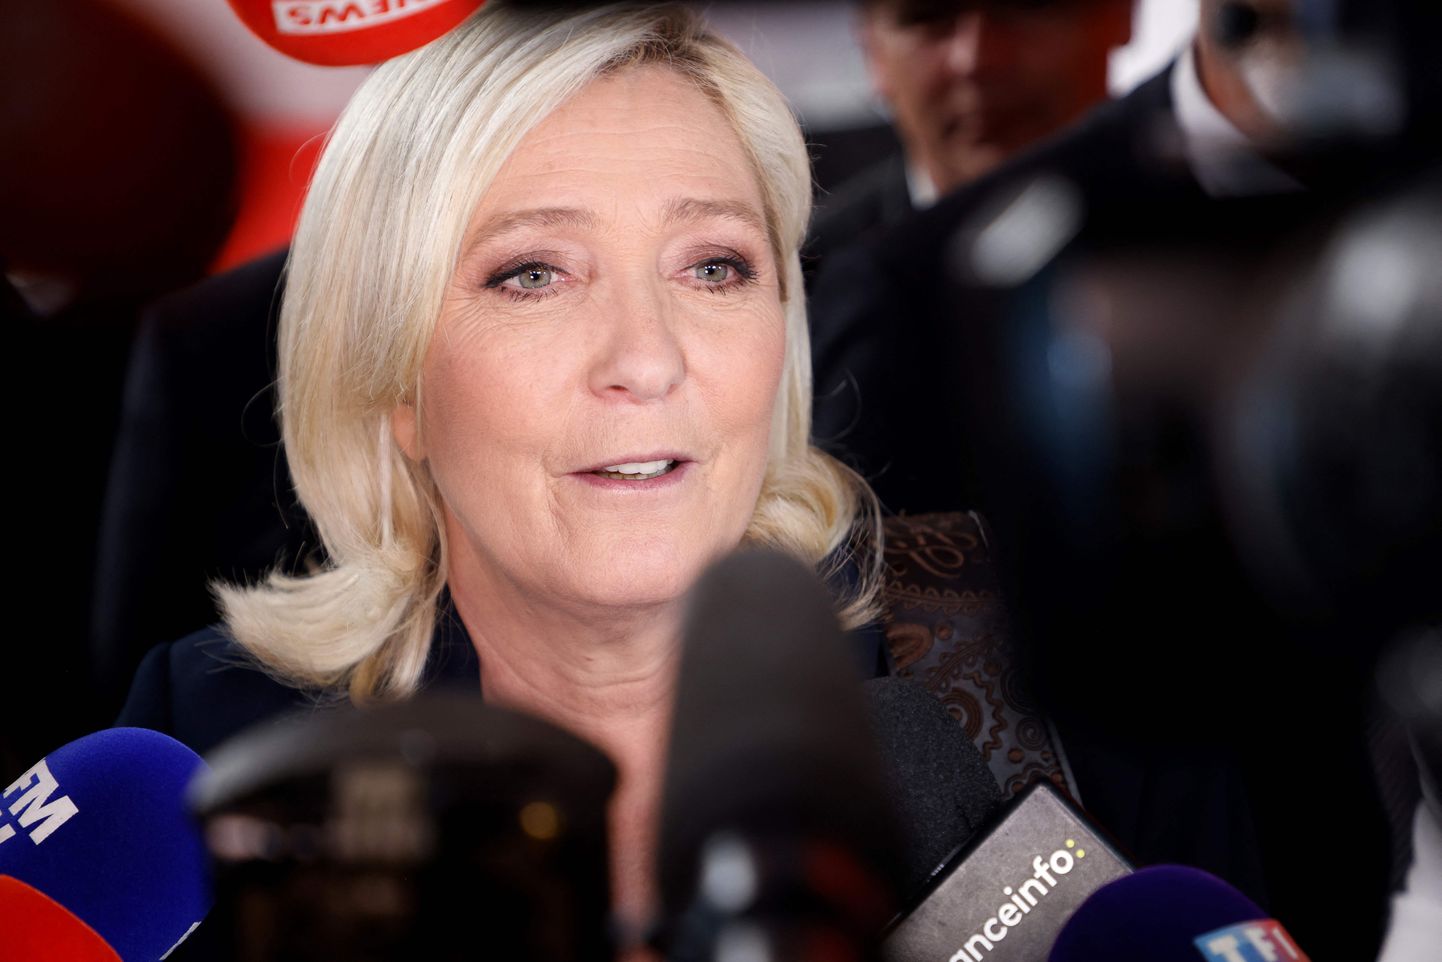 Prantsuse paremäärmuslik presidendikandidaat Marine Le Pen 20. aprillil 2022 andmas kommentaare Prantsusel tele- ja raadiokanalitele